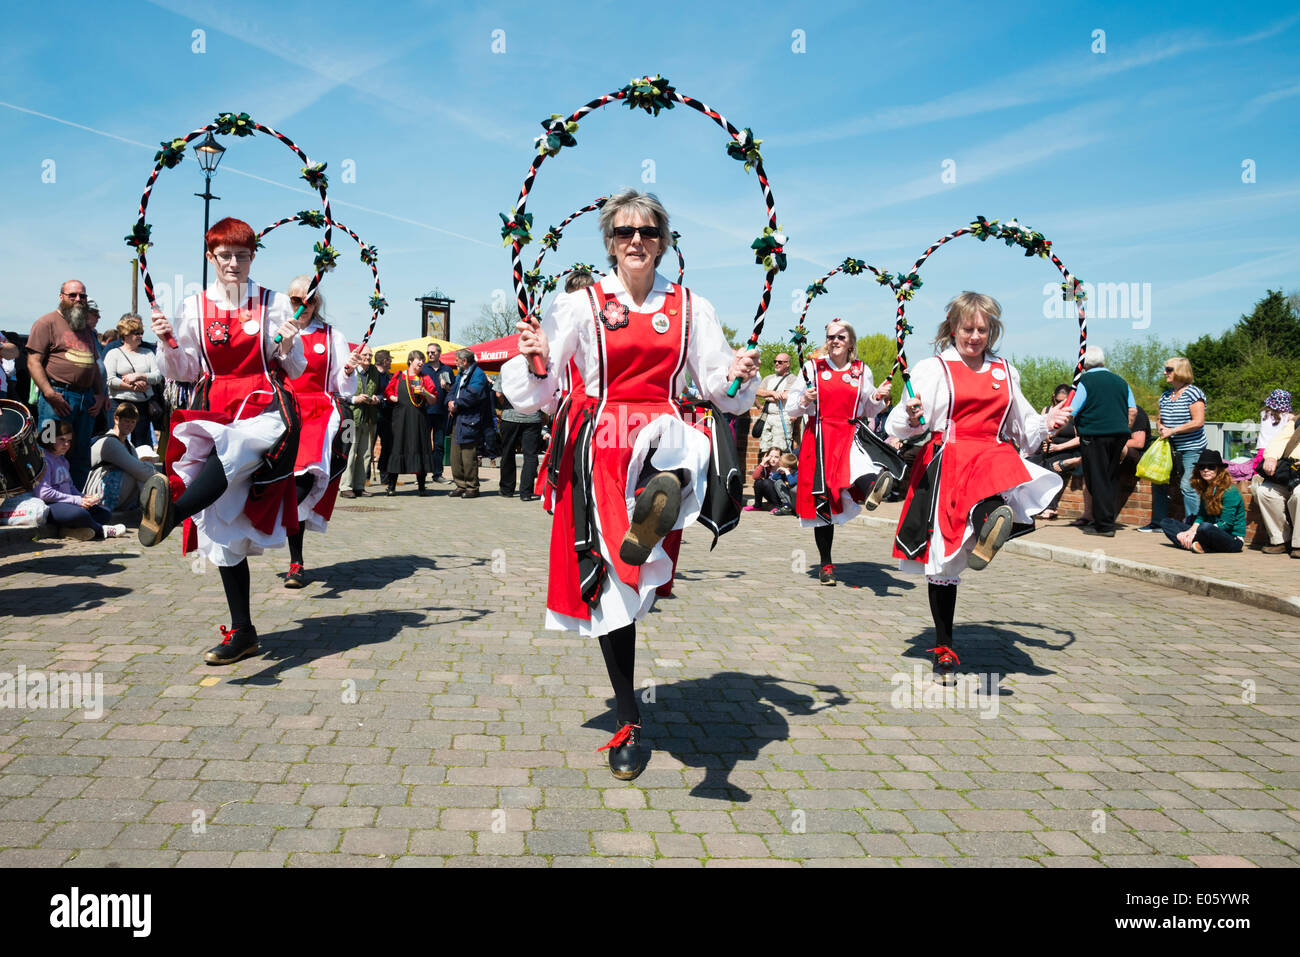 Upton en Severn, Worcestershire, Reino Unido. El 3 de mayo de 2014 bailarines folclóricos entretener a la gente en un hermoso día soleado. Morris femenino bailarines a Upton en Severn, Worcestershire, Reino Unido. Crédito: Robert Convery/Alamy Live News Foto de stock